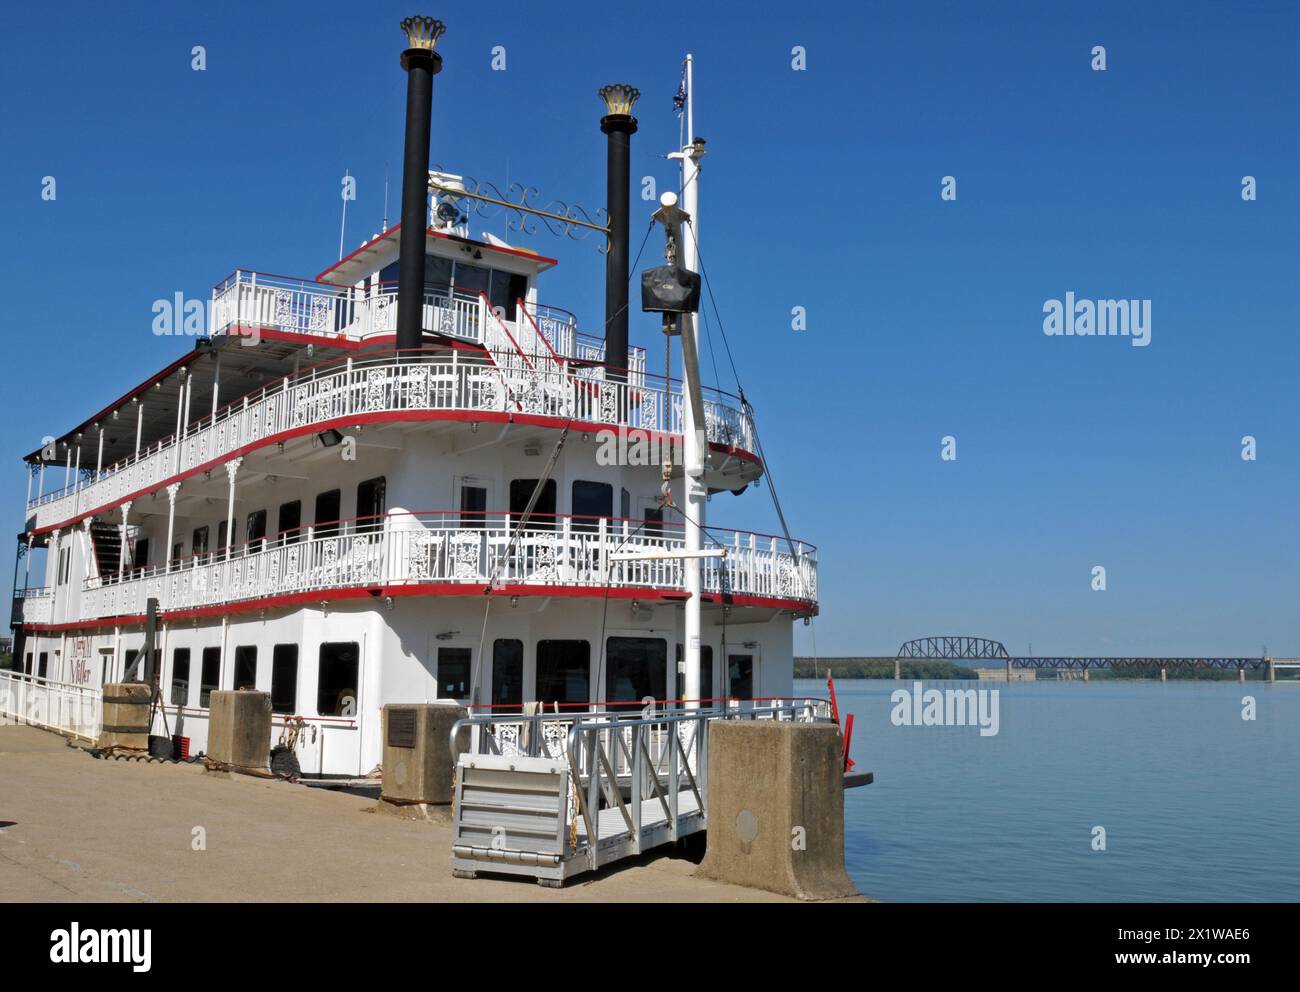 Das Flussschiff Mary M. Miller, ein Schwesterschiff der Belle of Louisville, nimmt auch Passagiere für Kreuzfahrten auf dem Ohio River in Louisville mit. Stockfoto